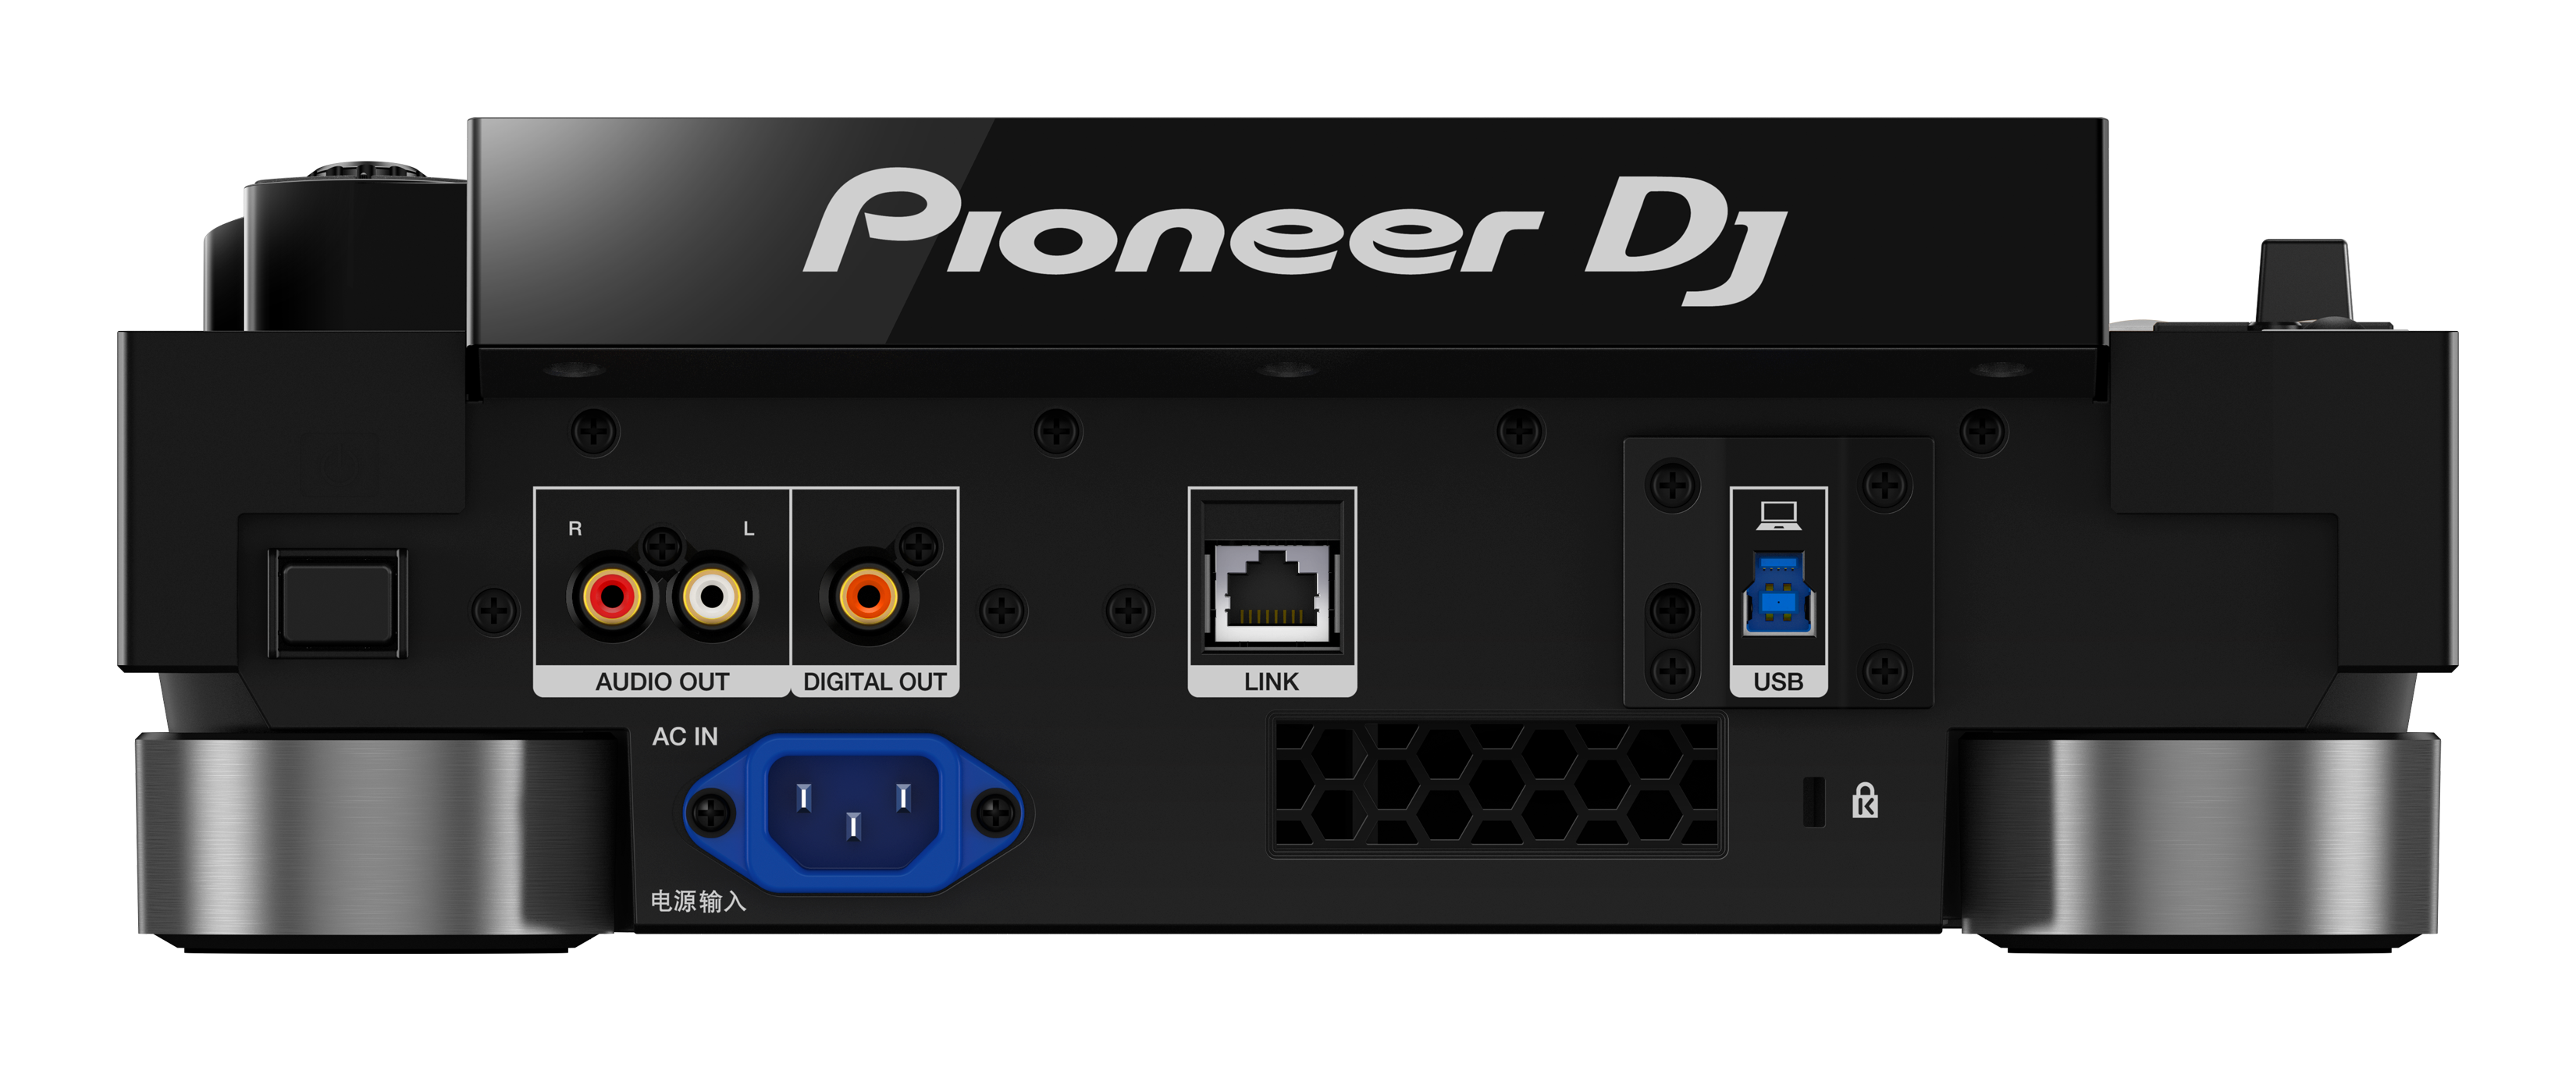 Pioneer Dj Cdj 3000予約開始 石橋楽器 渋谷店 ブログ